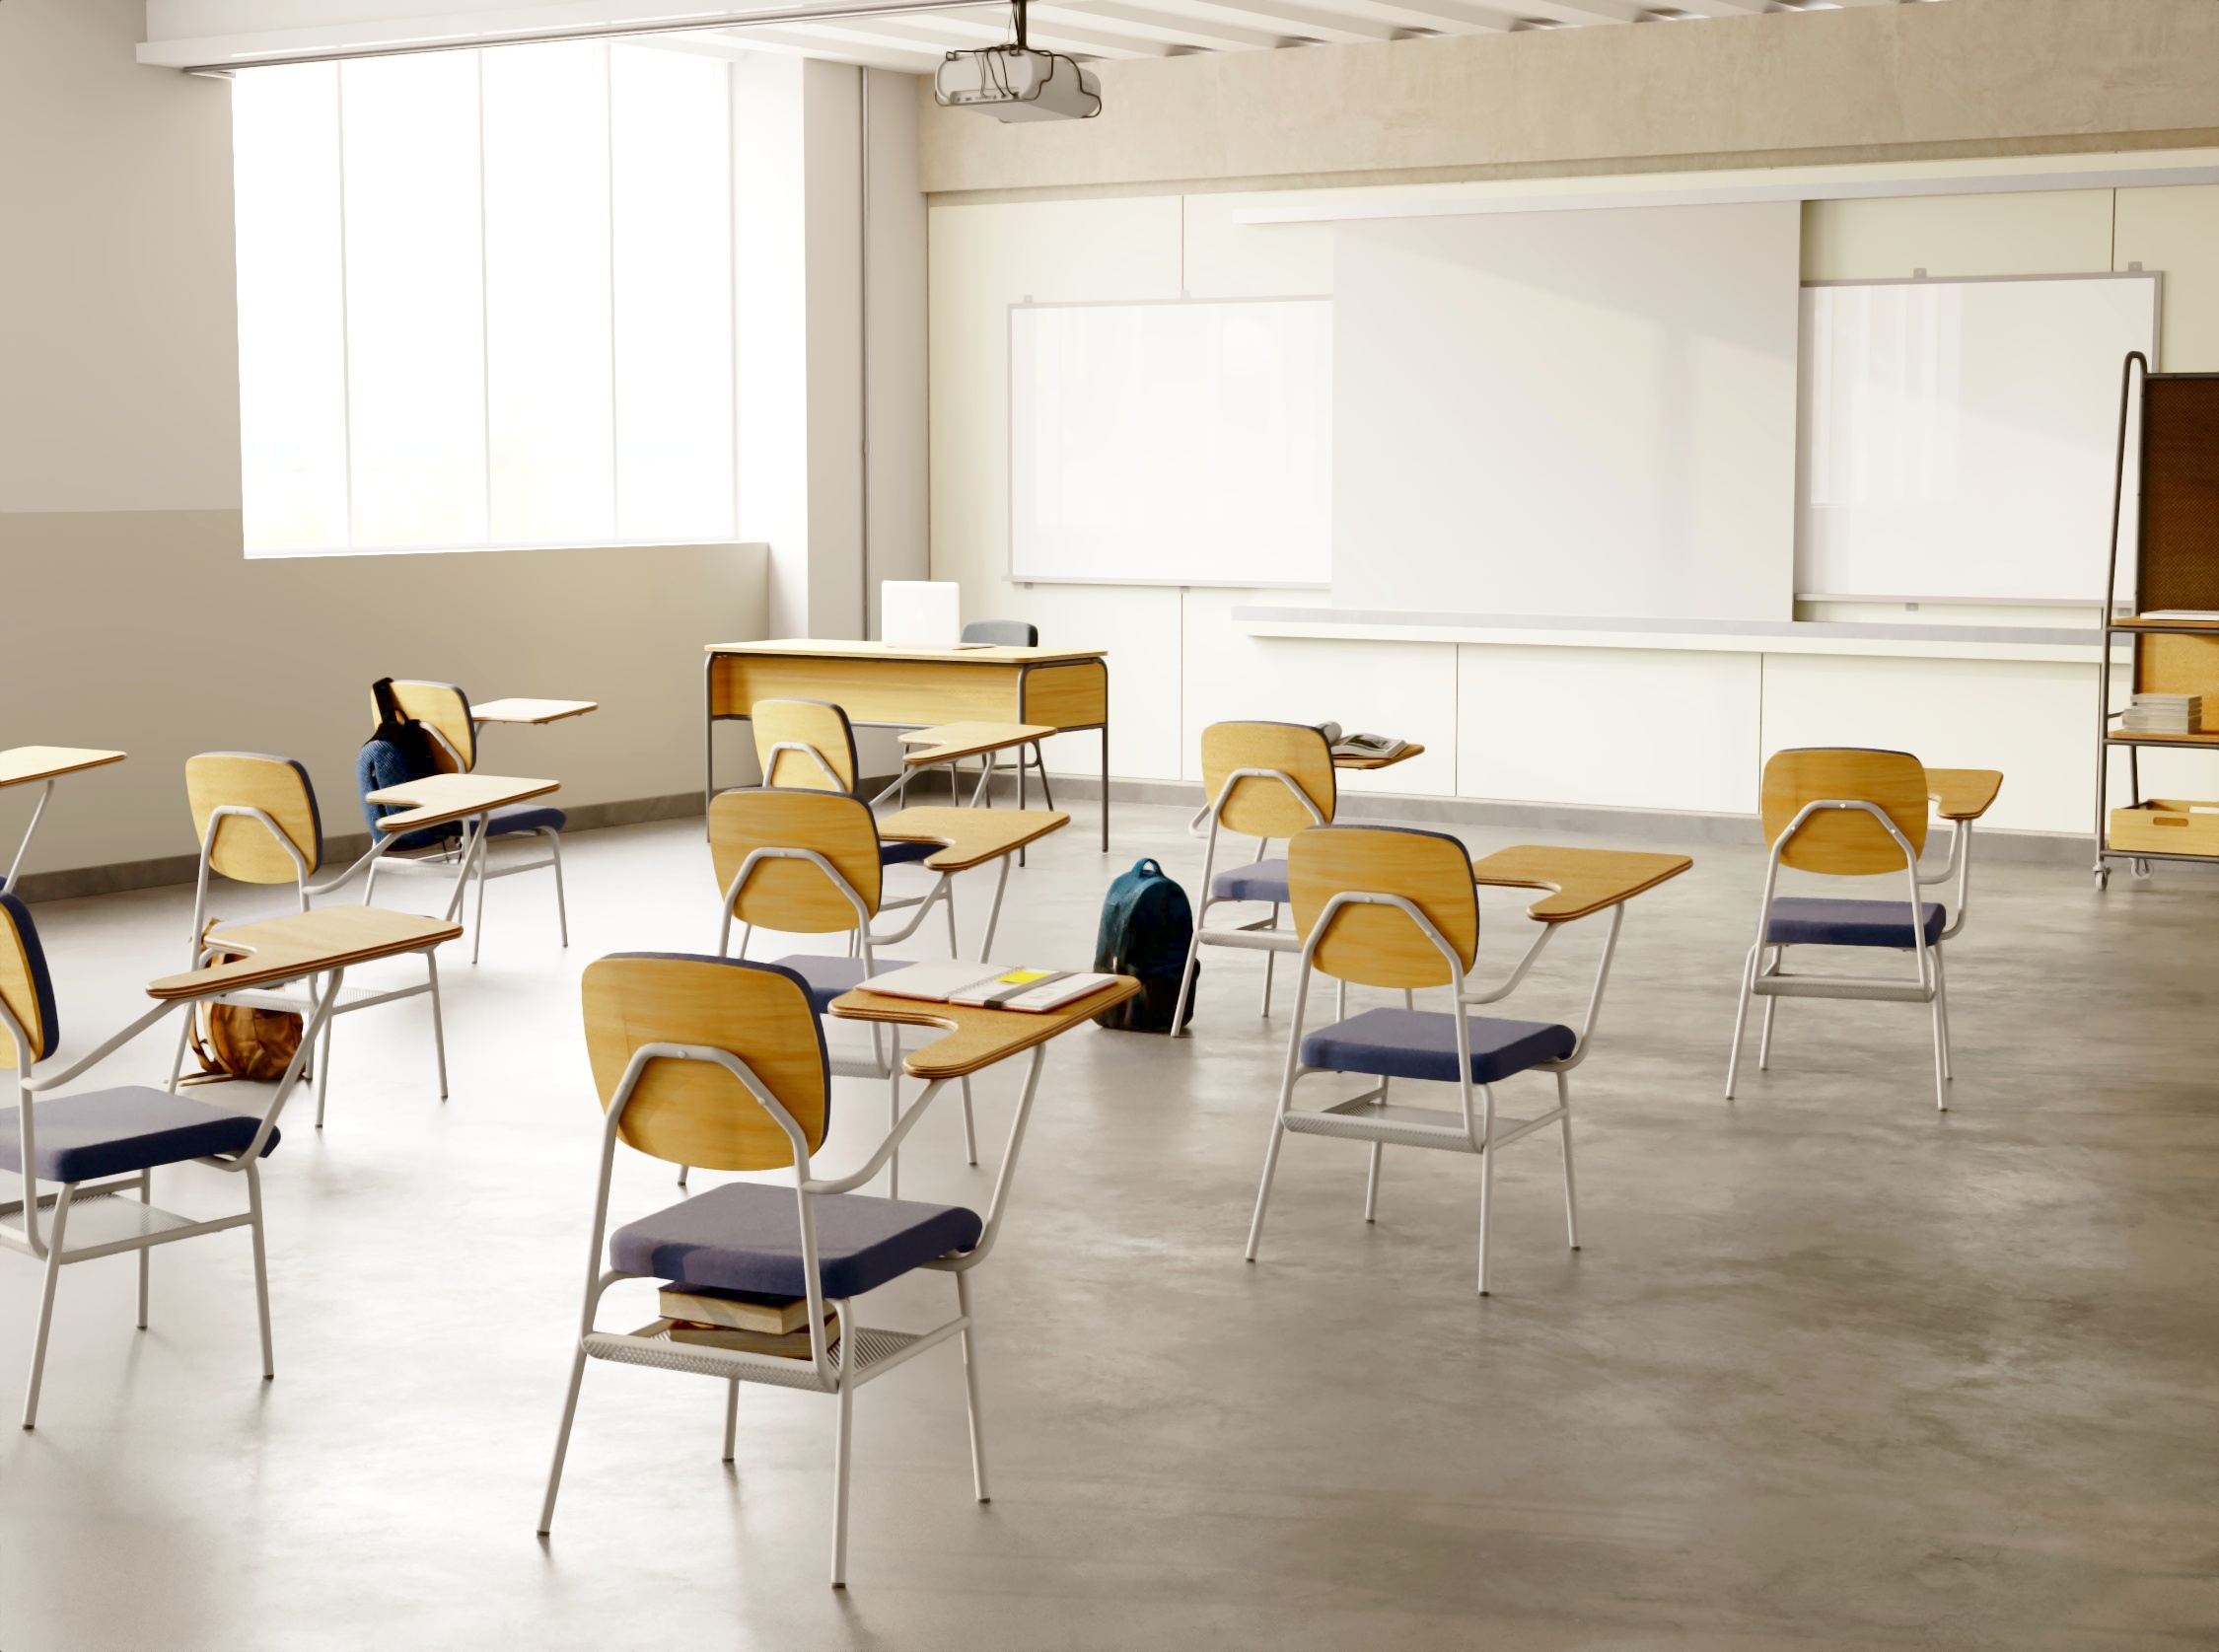 Imagem 3D de uma sala de aula de faculdade com cadeiras com prancheta, projetor fixo no teto e lousa